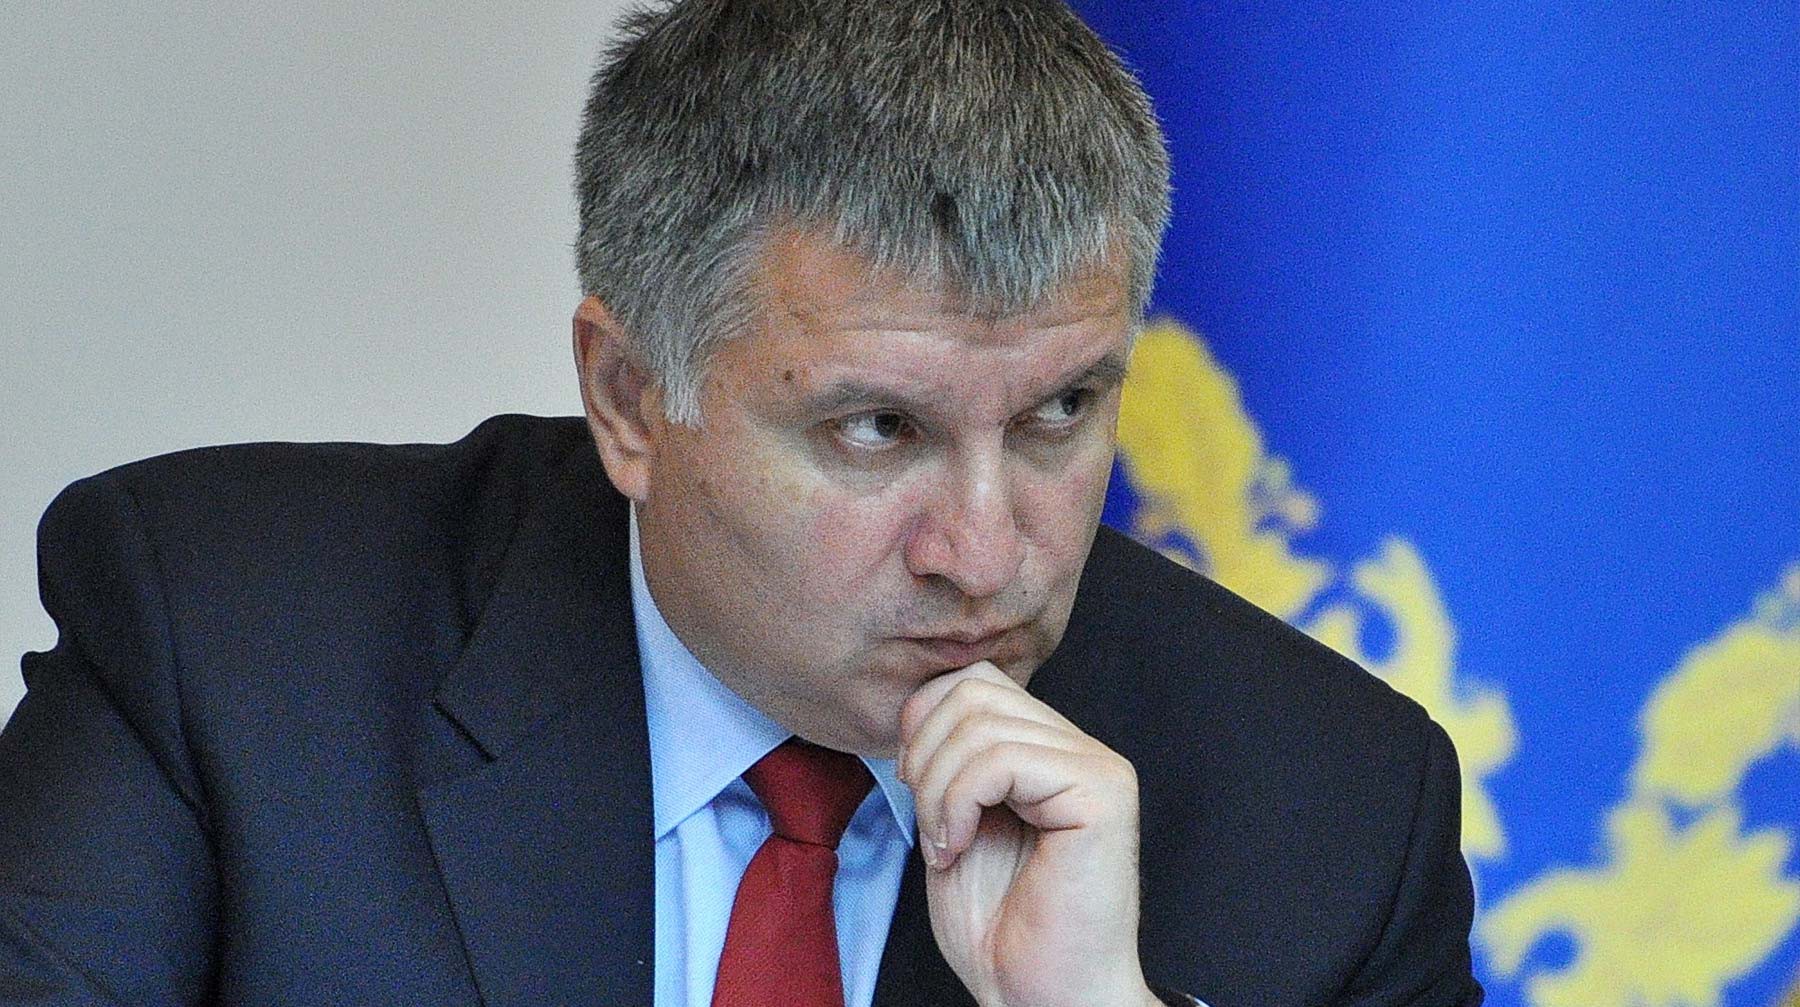 Dailystorm - Глава МВД Украины осудил грубую агитацию на выборах президента